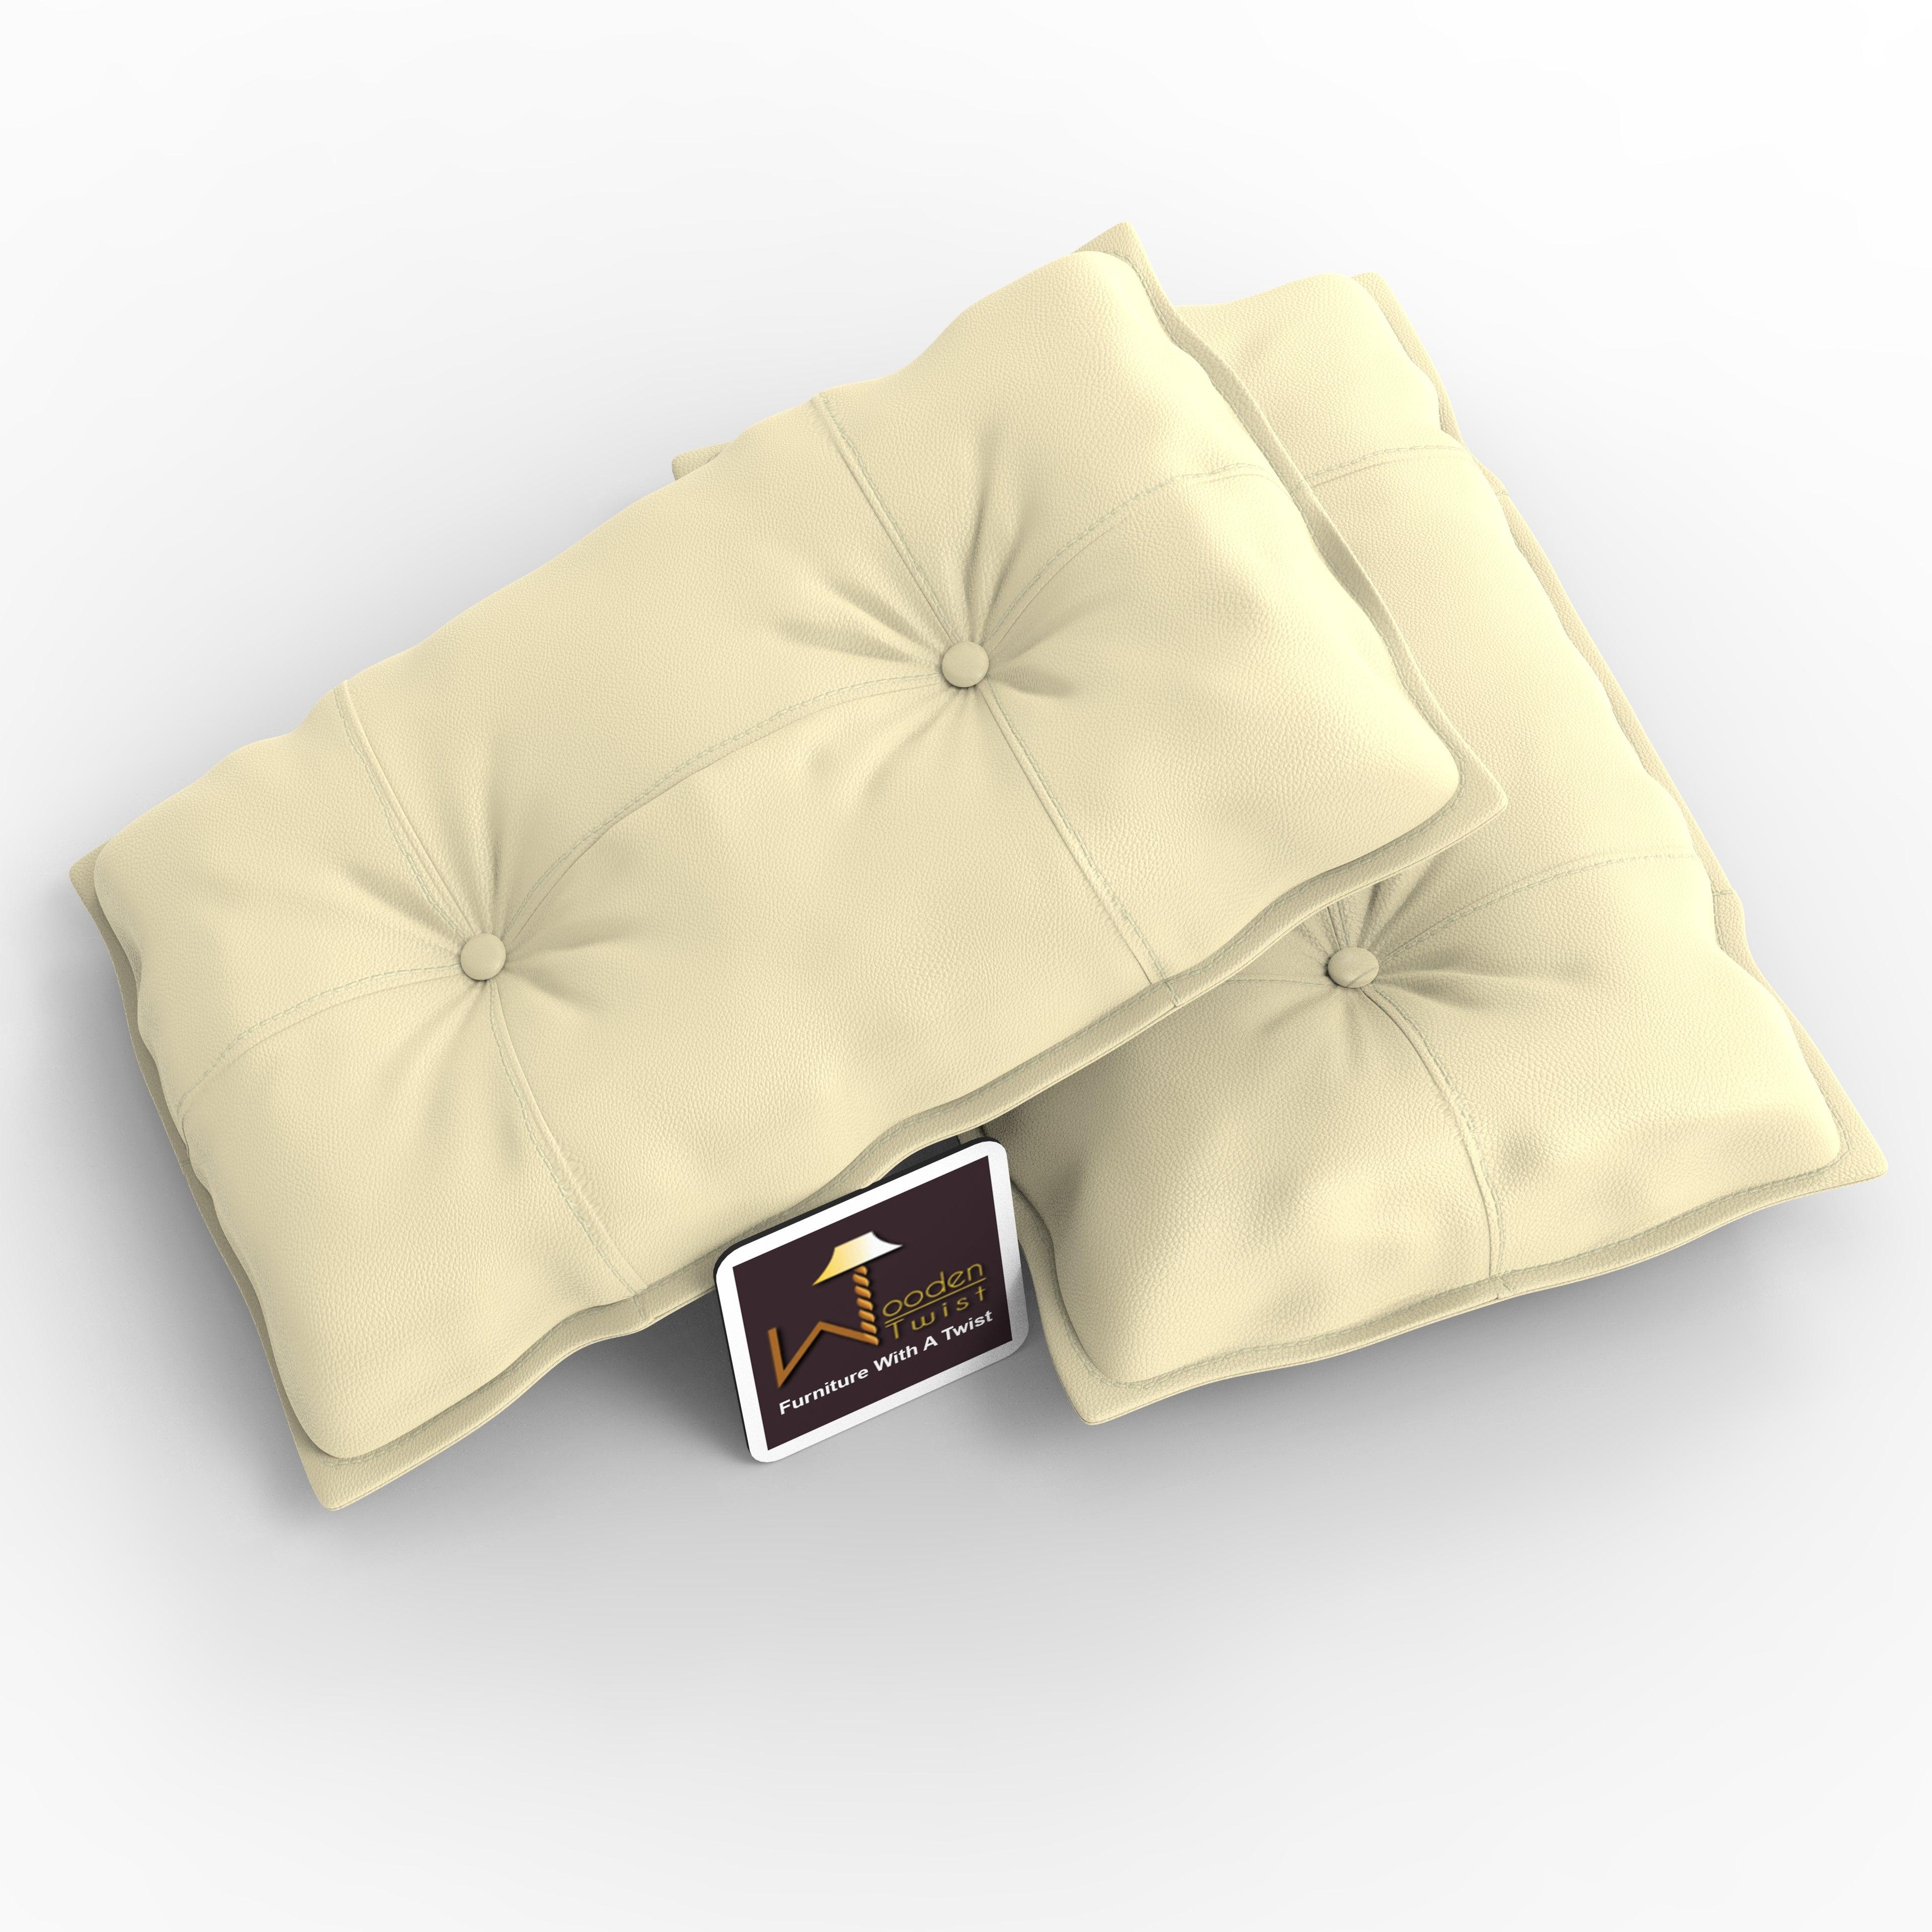 Buy Fabrahome Button Tufted Rectangular Fiber Pillow Set of 2